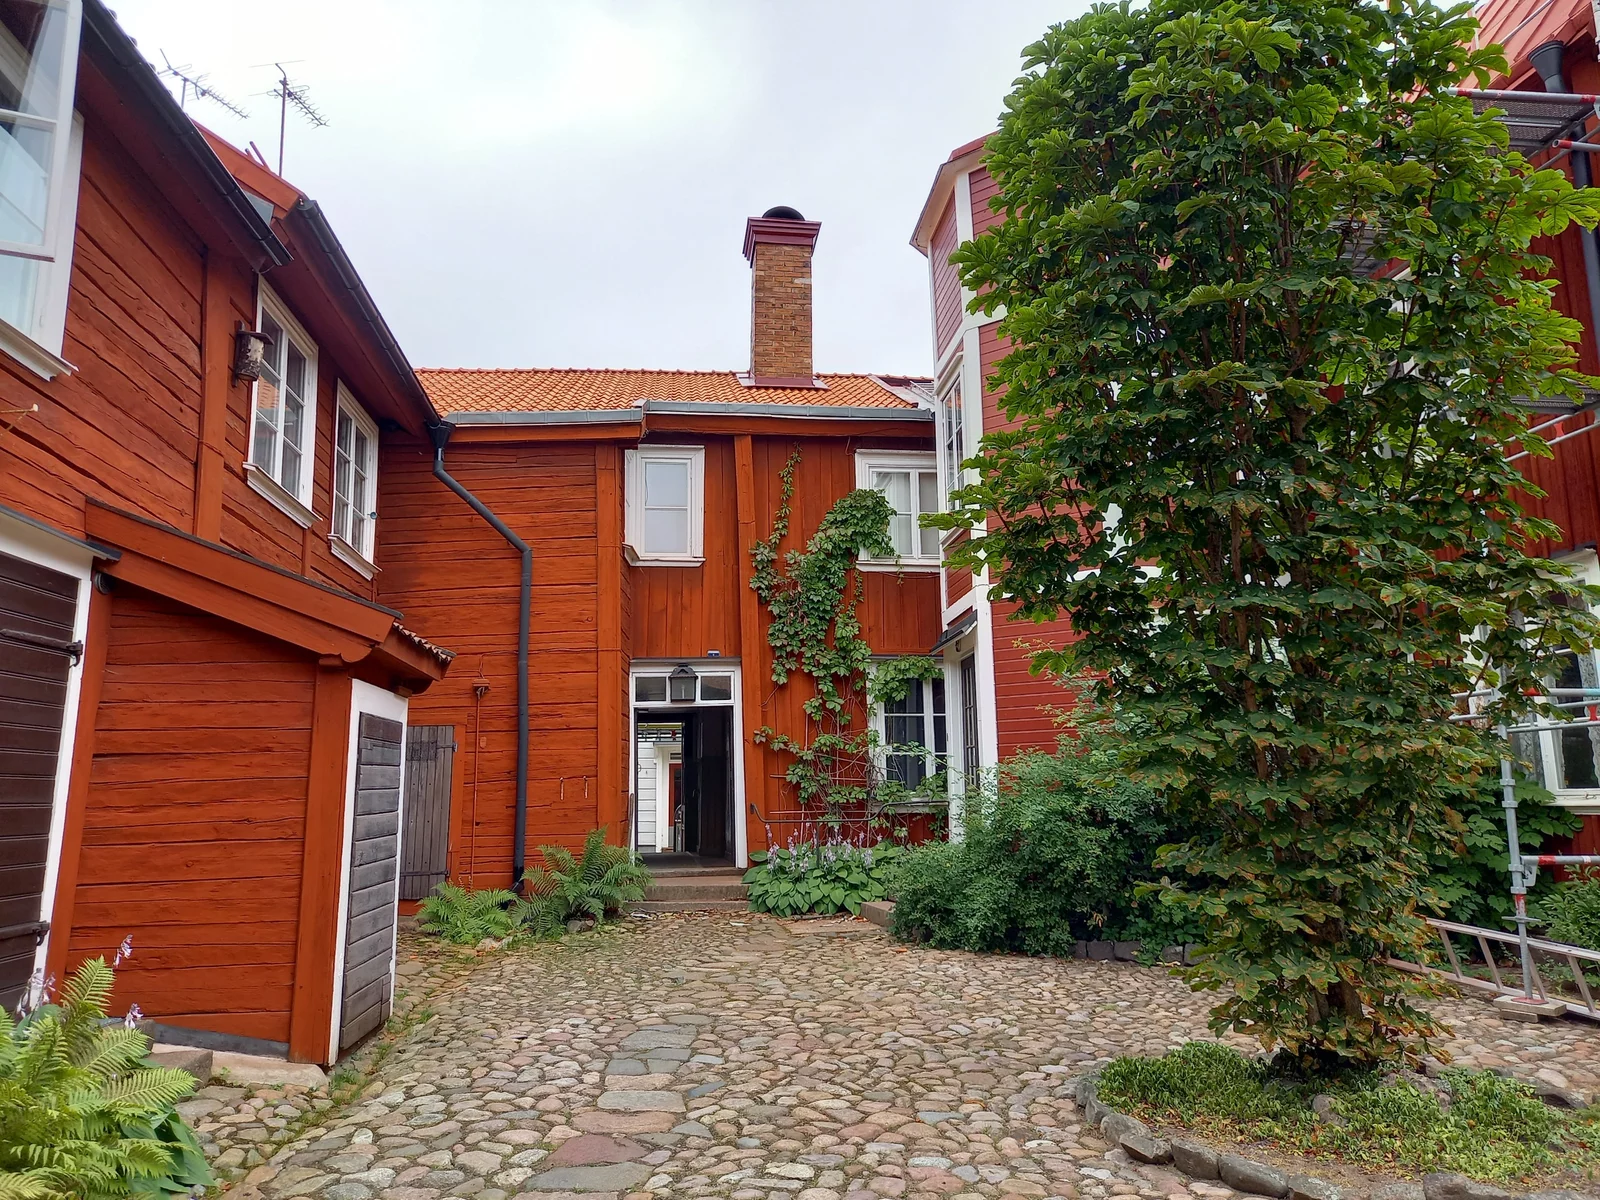 houses in Sweden